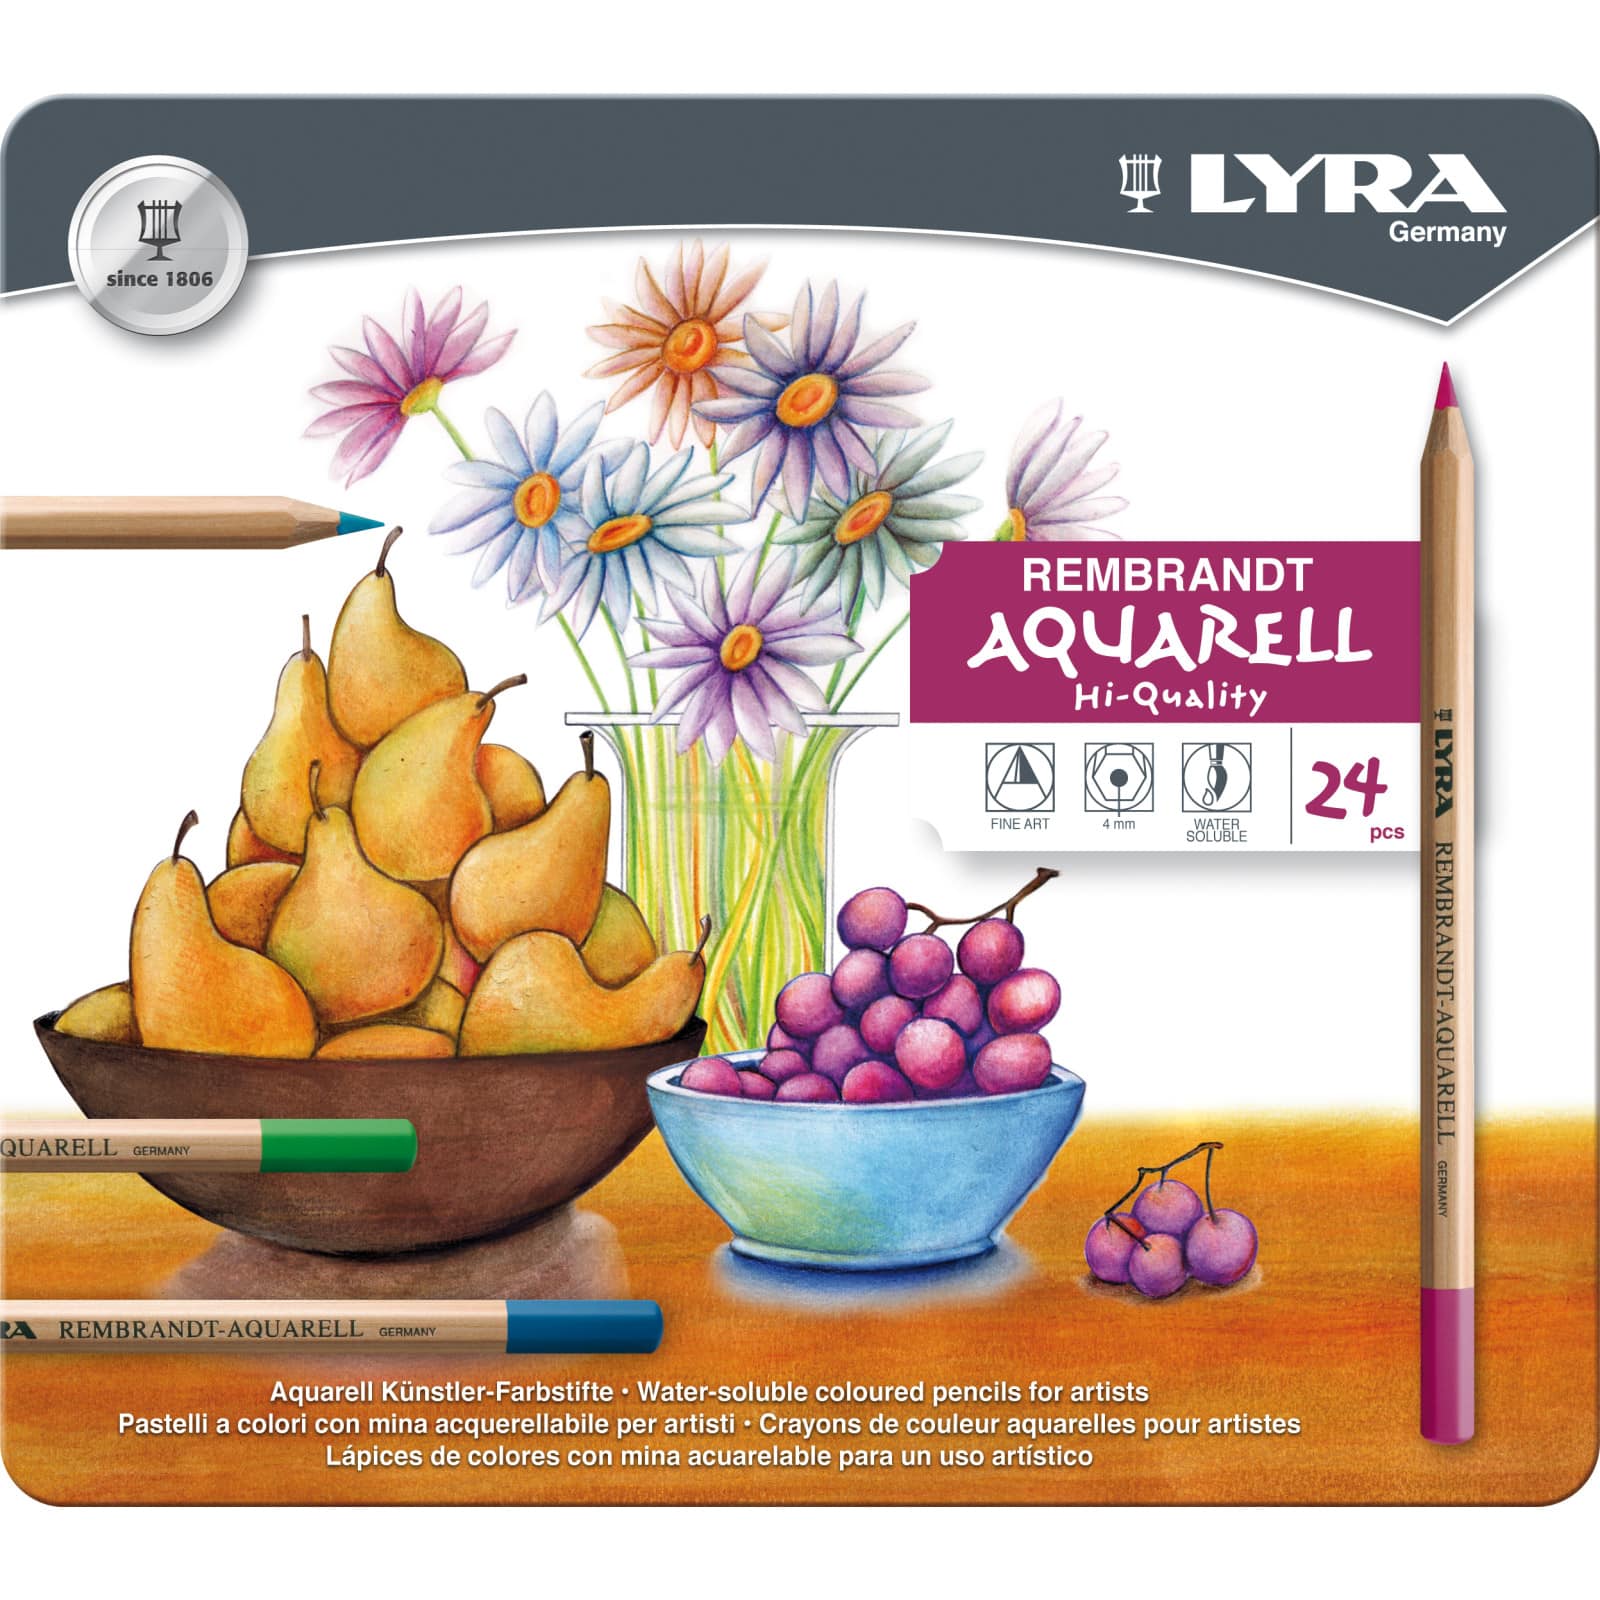 Lyra Aquarell 24 Piece Colored Pencil Set